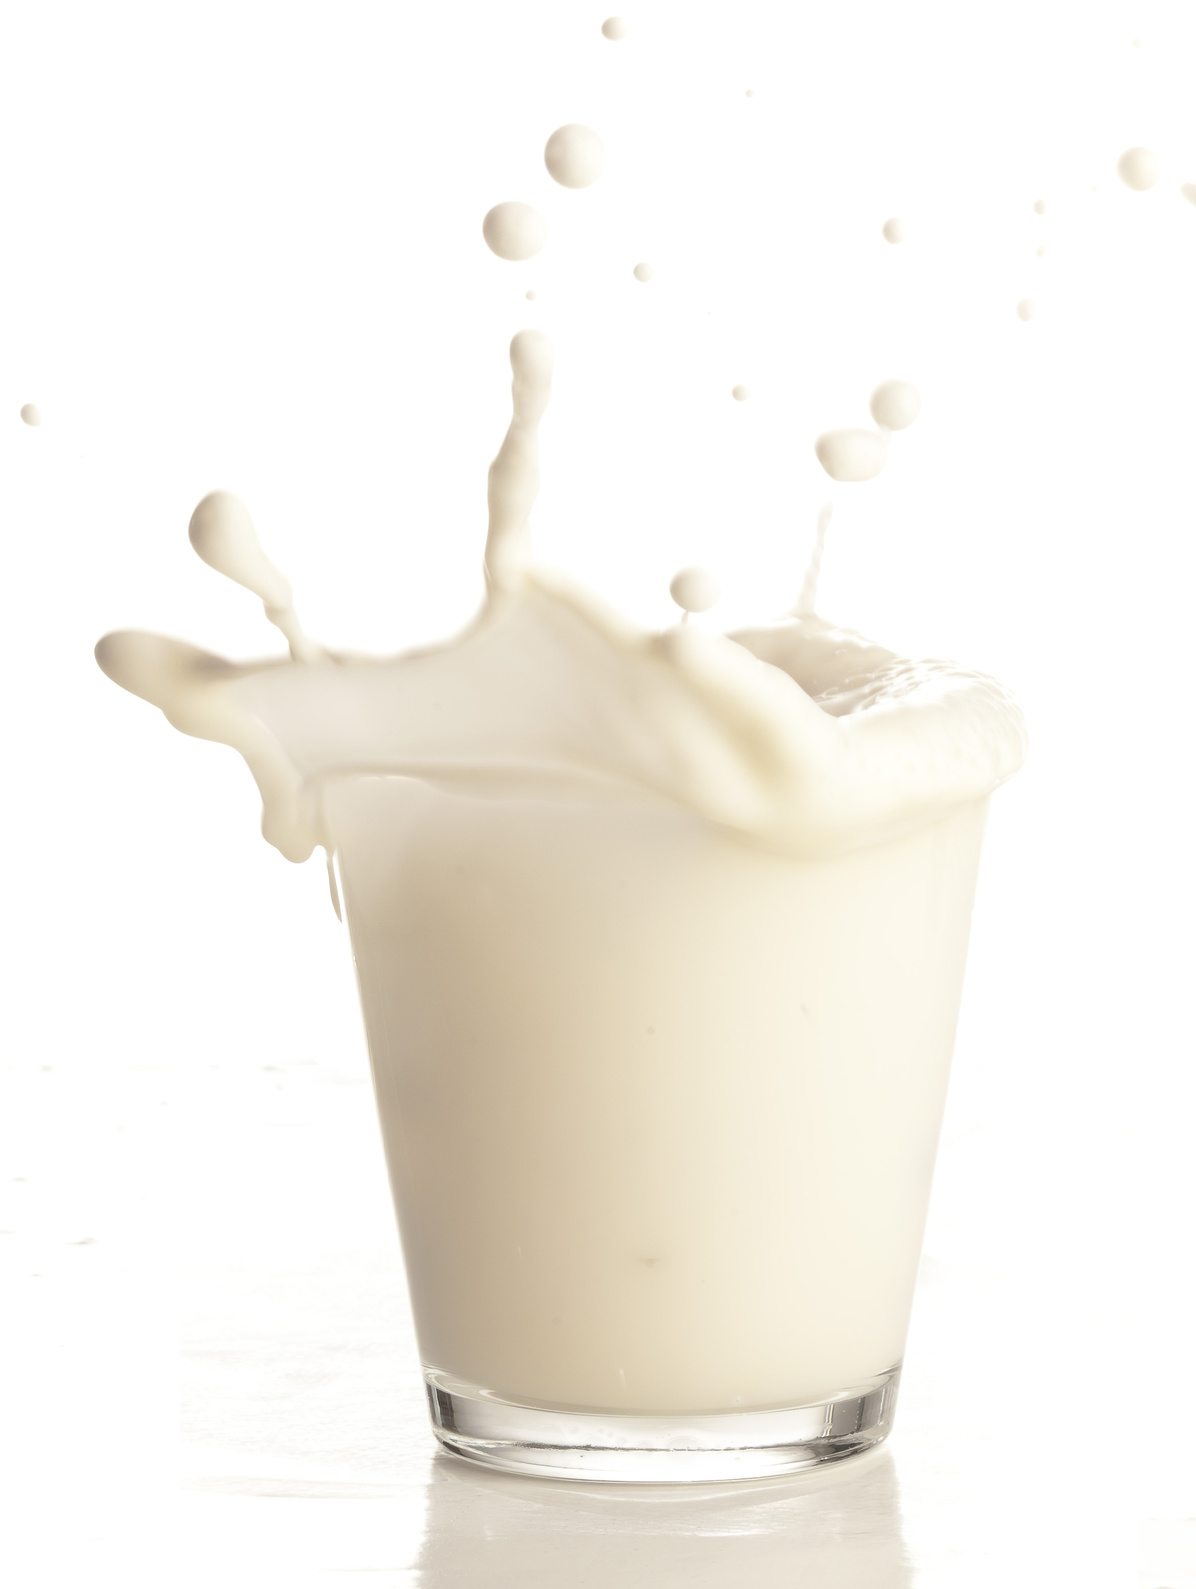 Milch Lebensmittelaroma Konzentrat